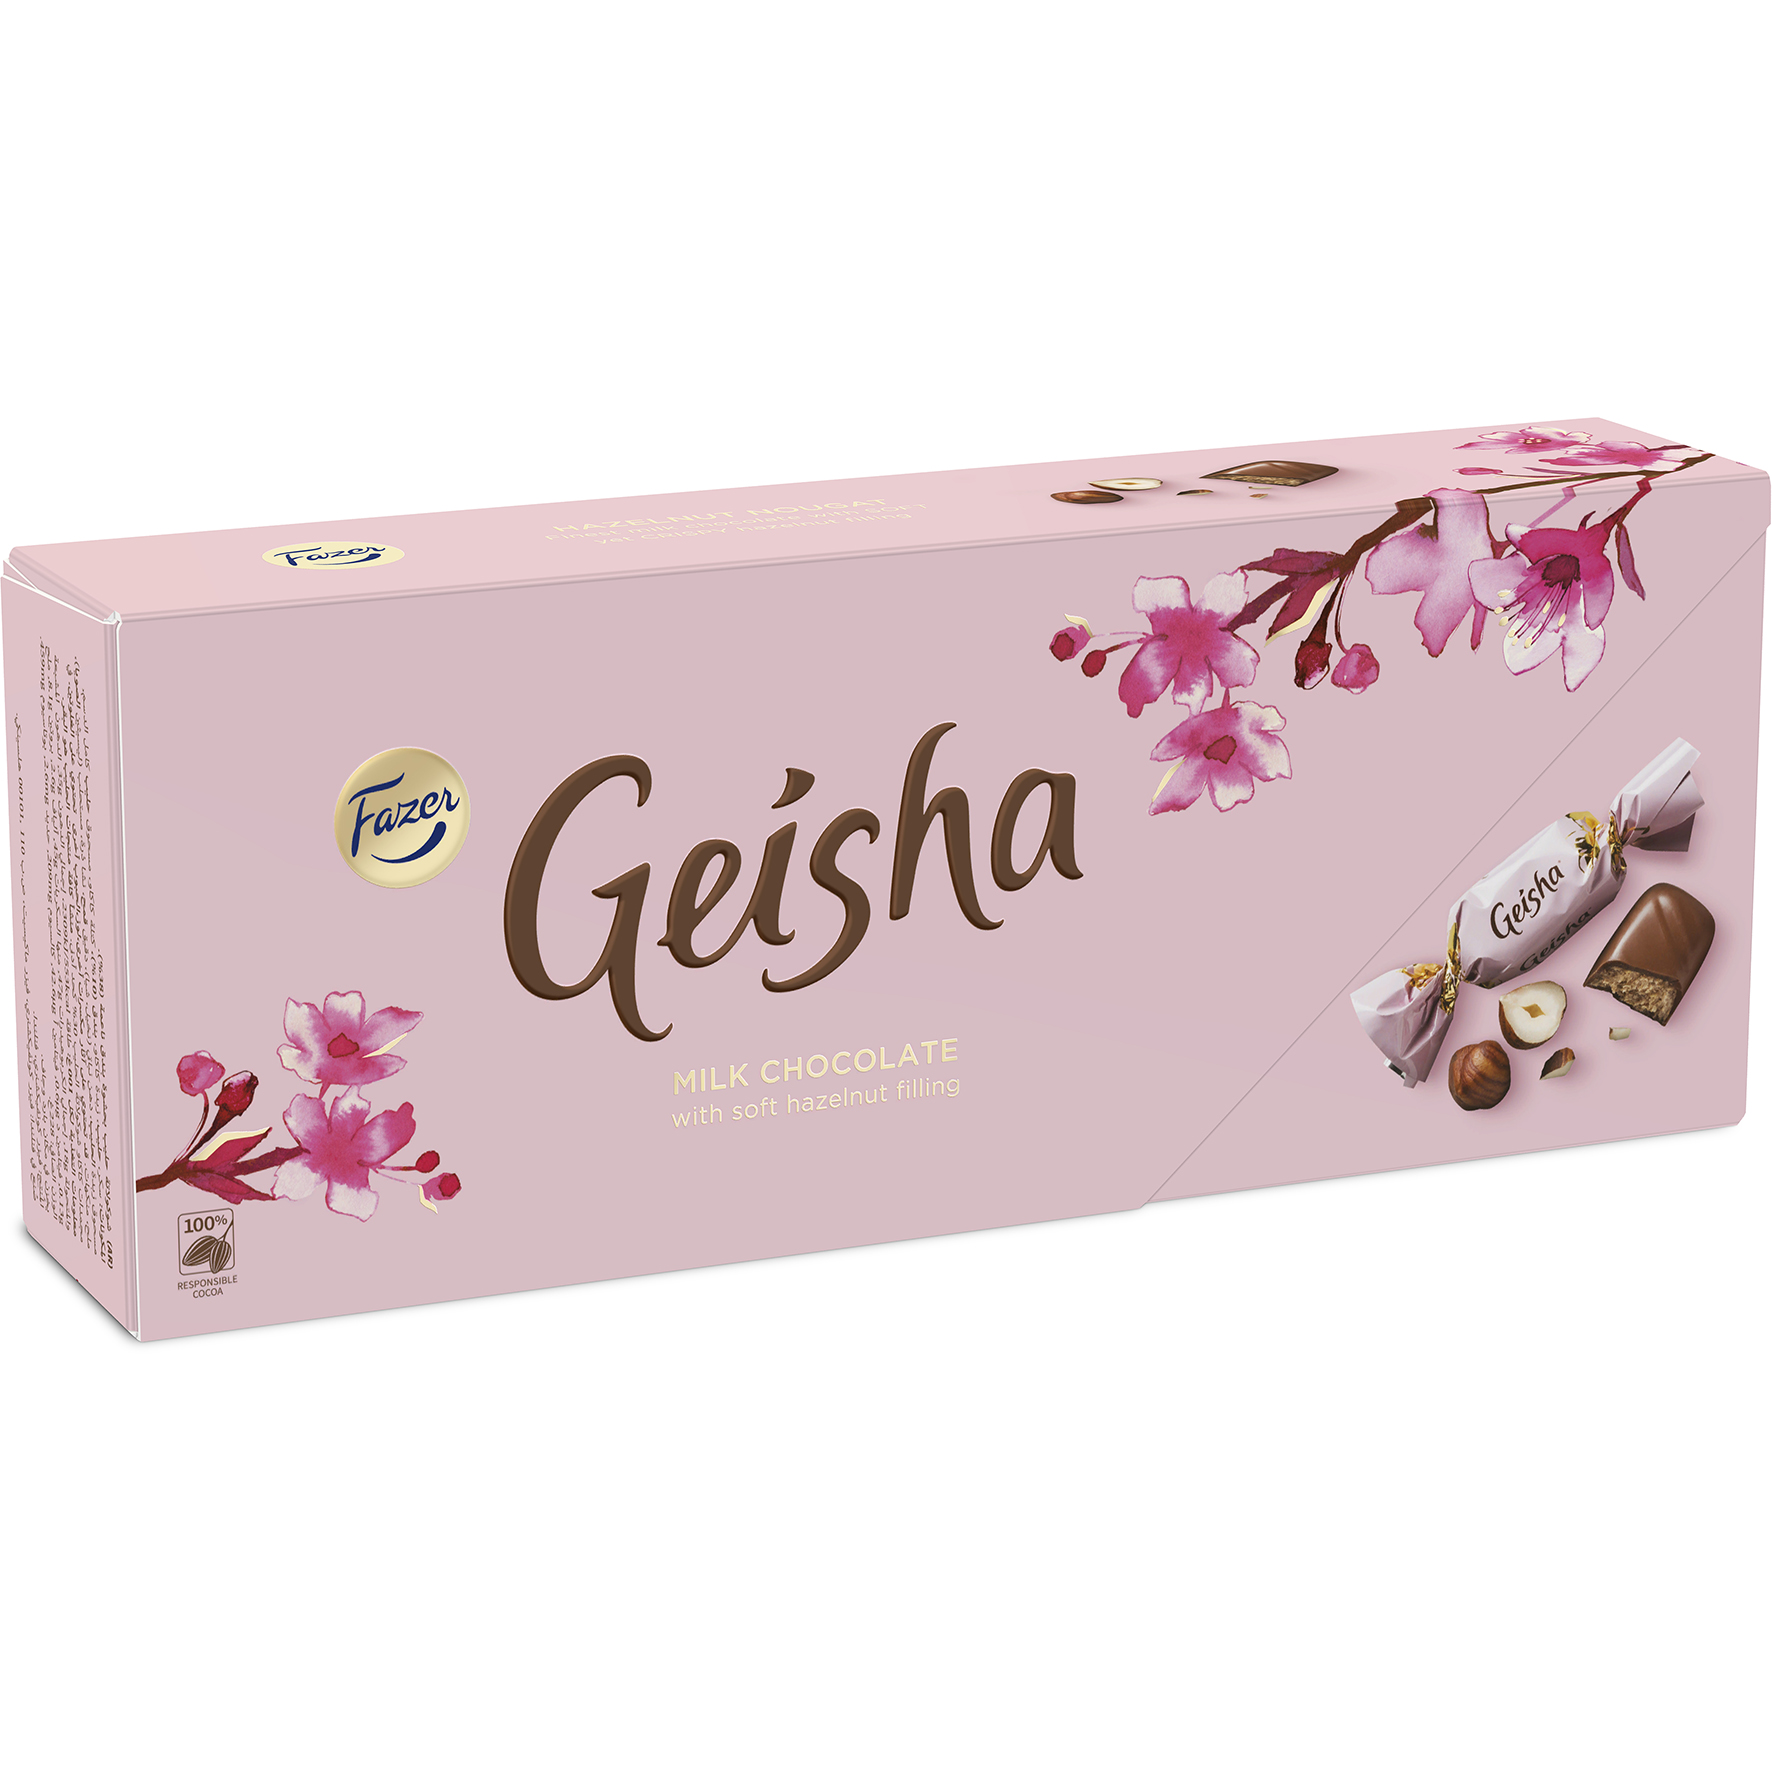 [8558460] Geisha Original ask 228g